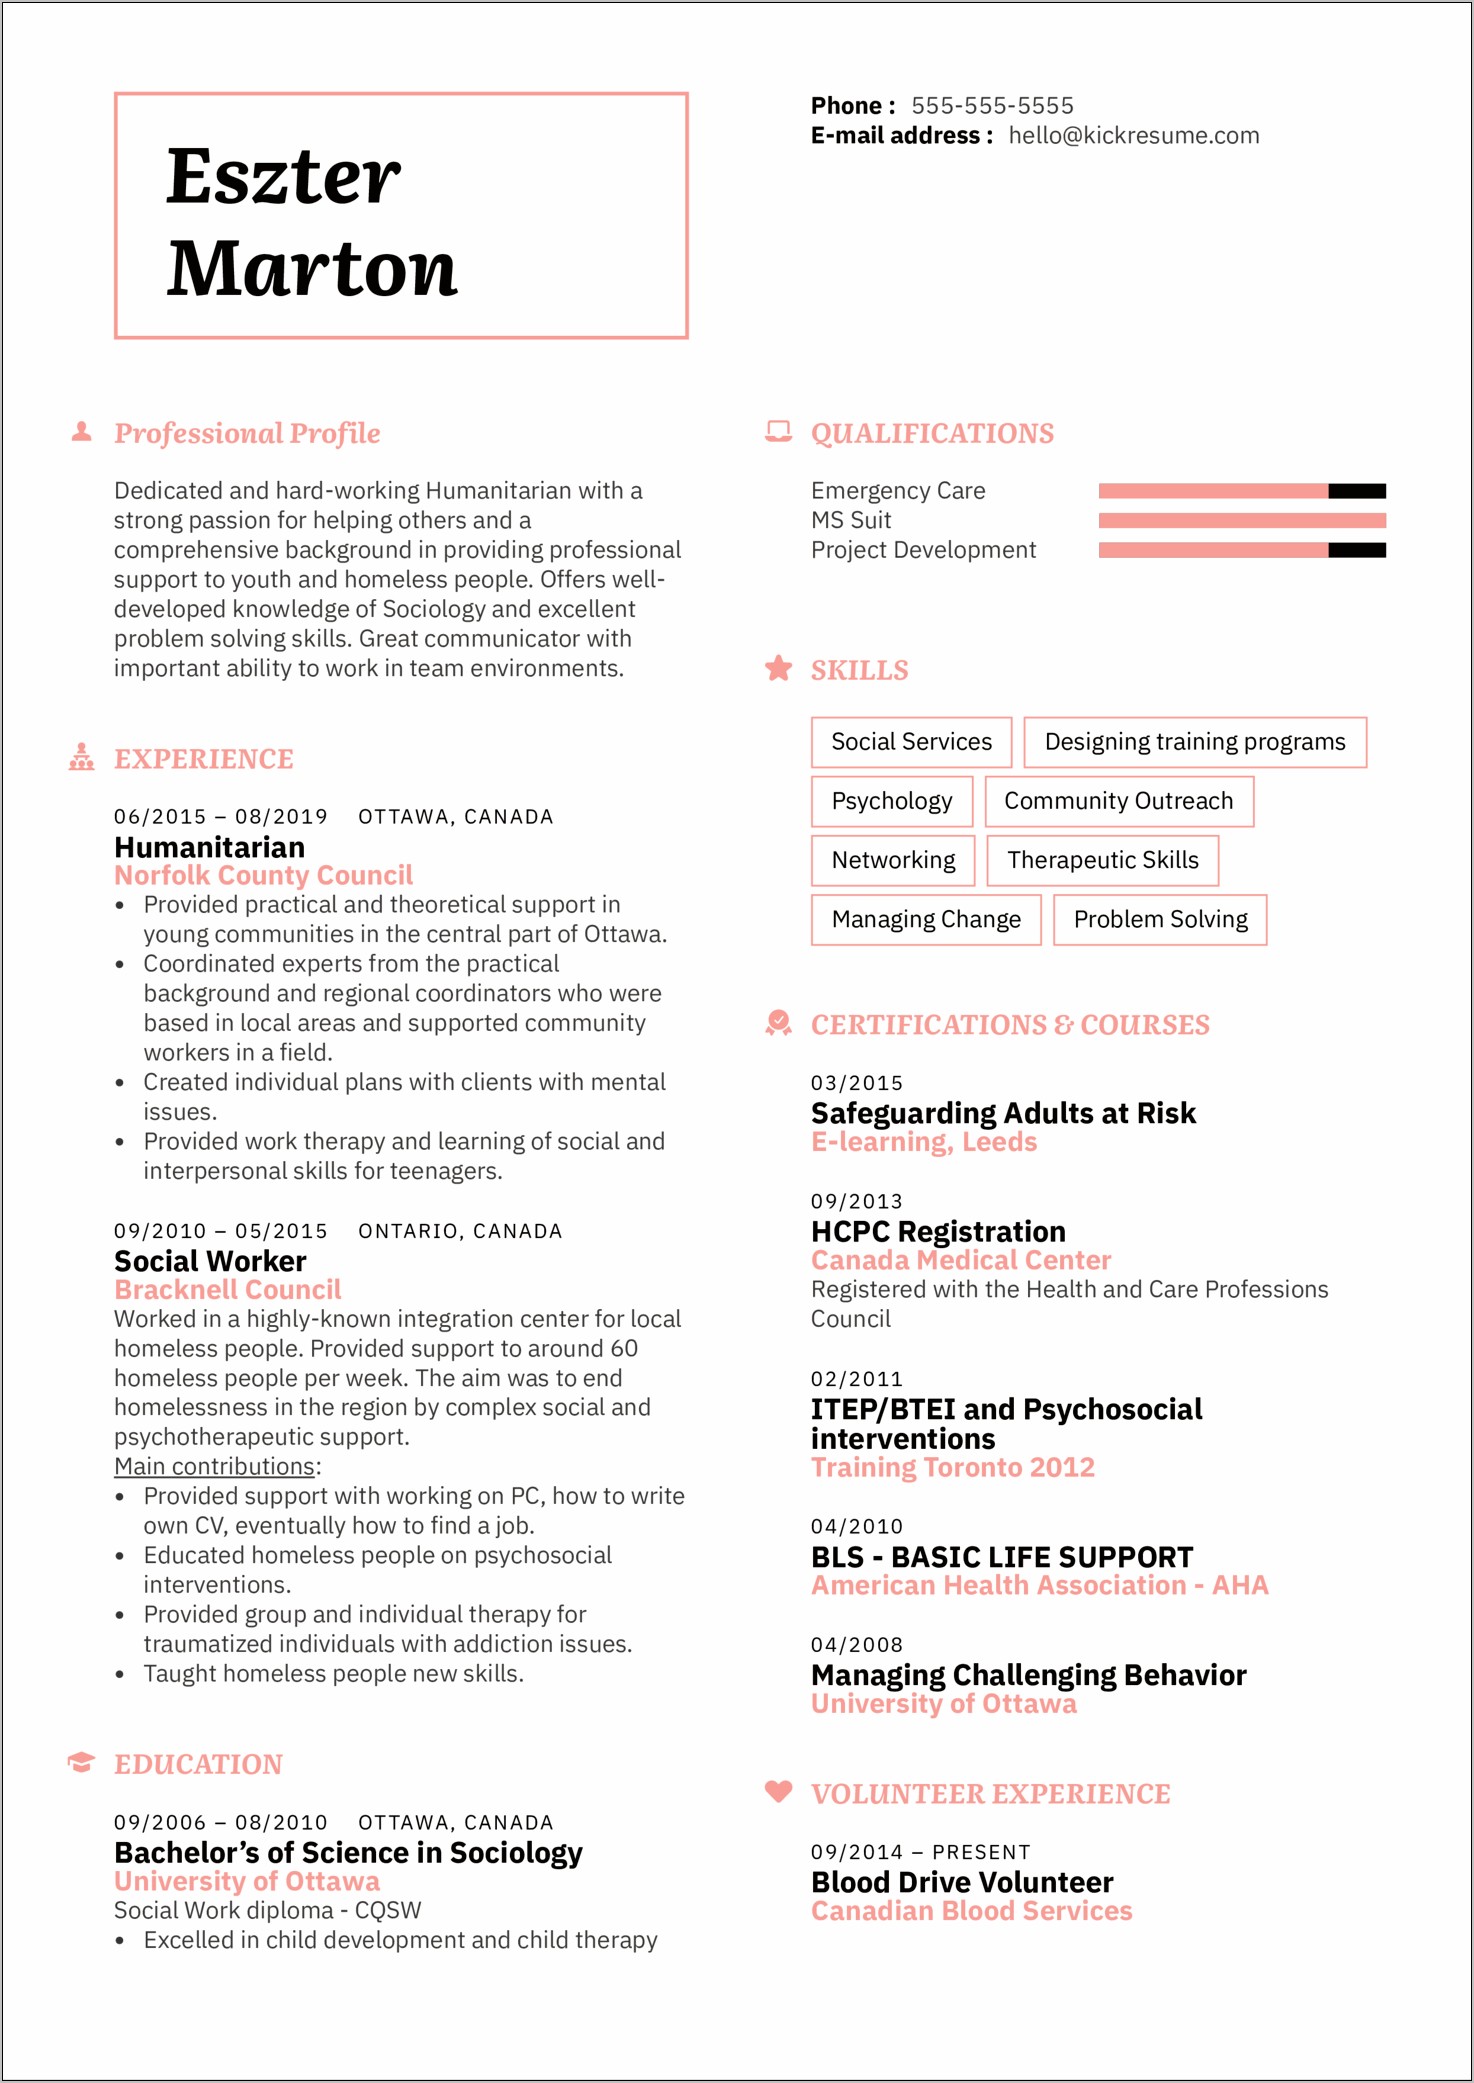 Sample American Resume 2019 Format